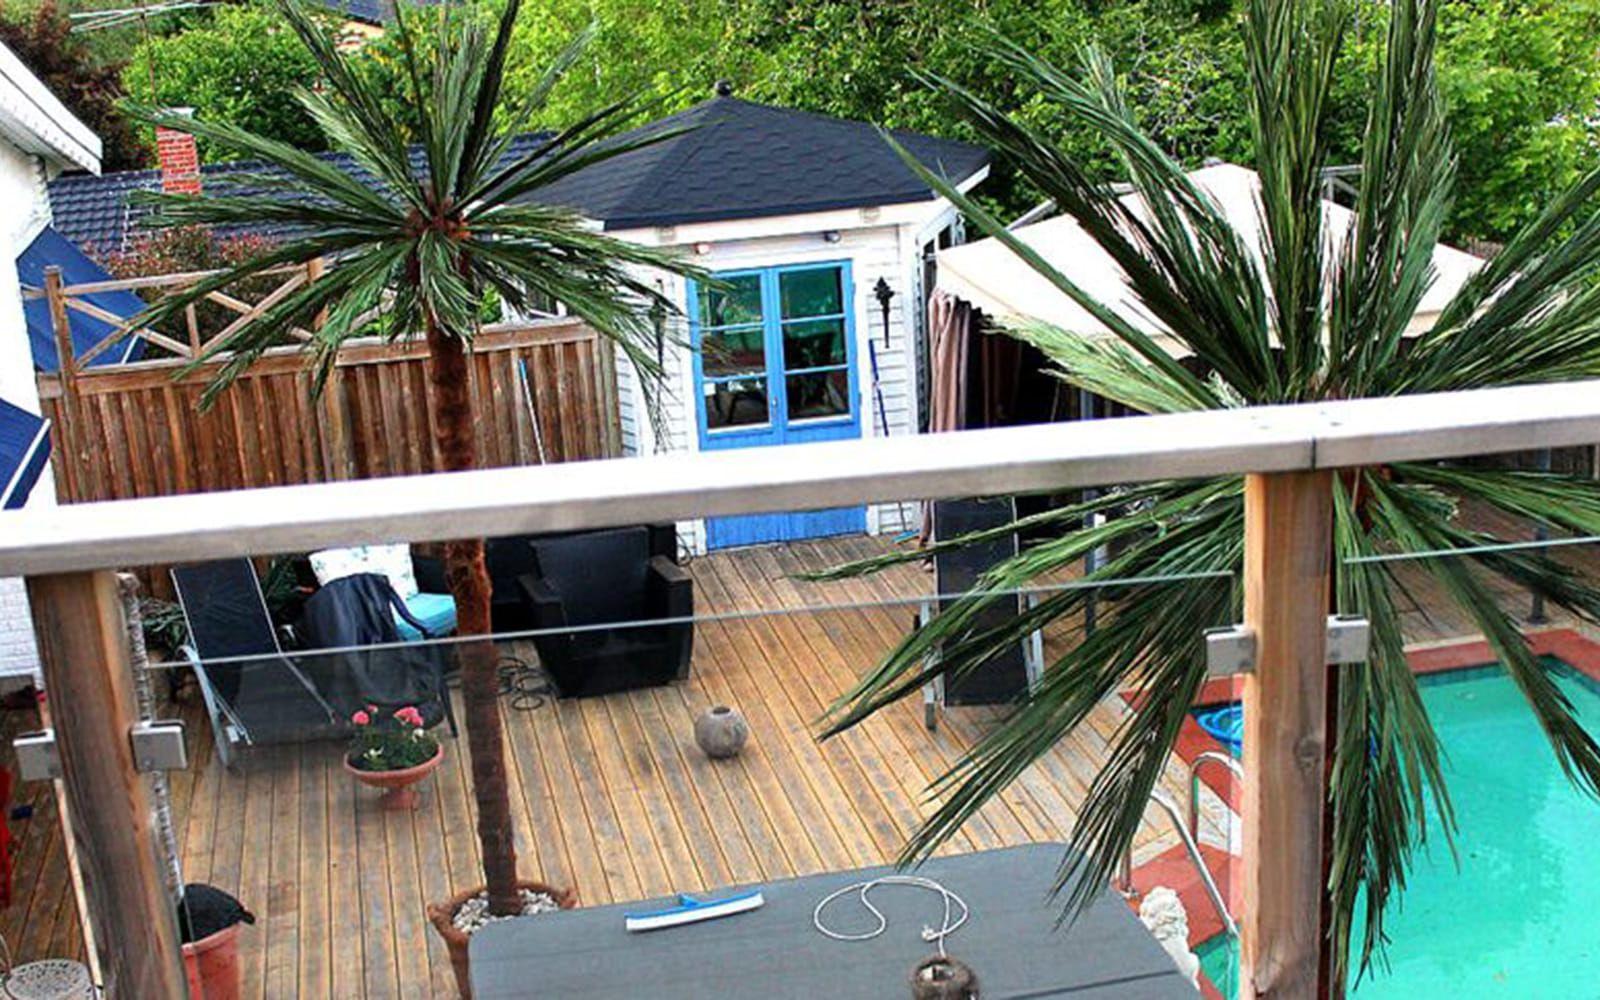 Enligt mäklaren är det en spanskinspirerad poolvilla – och visst ger de två palmerna lite medelhavsfeeling? Foto: SthlmFast
